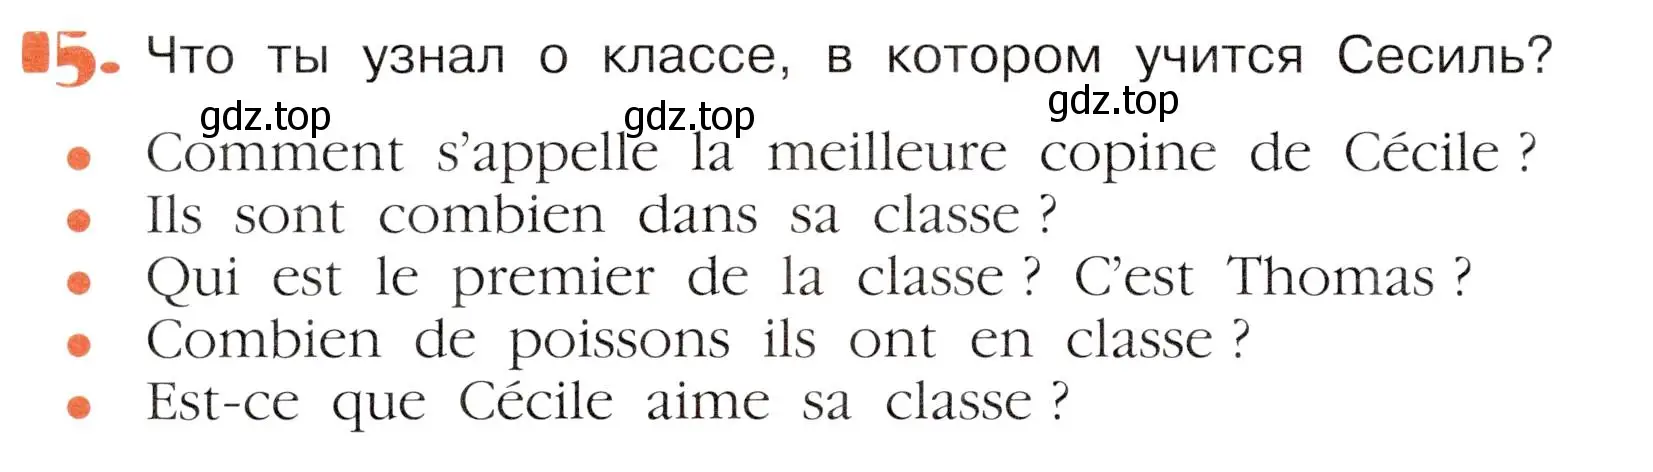 Условие номер 15 (страница 72) гдз по французскому языку 5 класс Береговская, Белосельская, учебник 1 часть